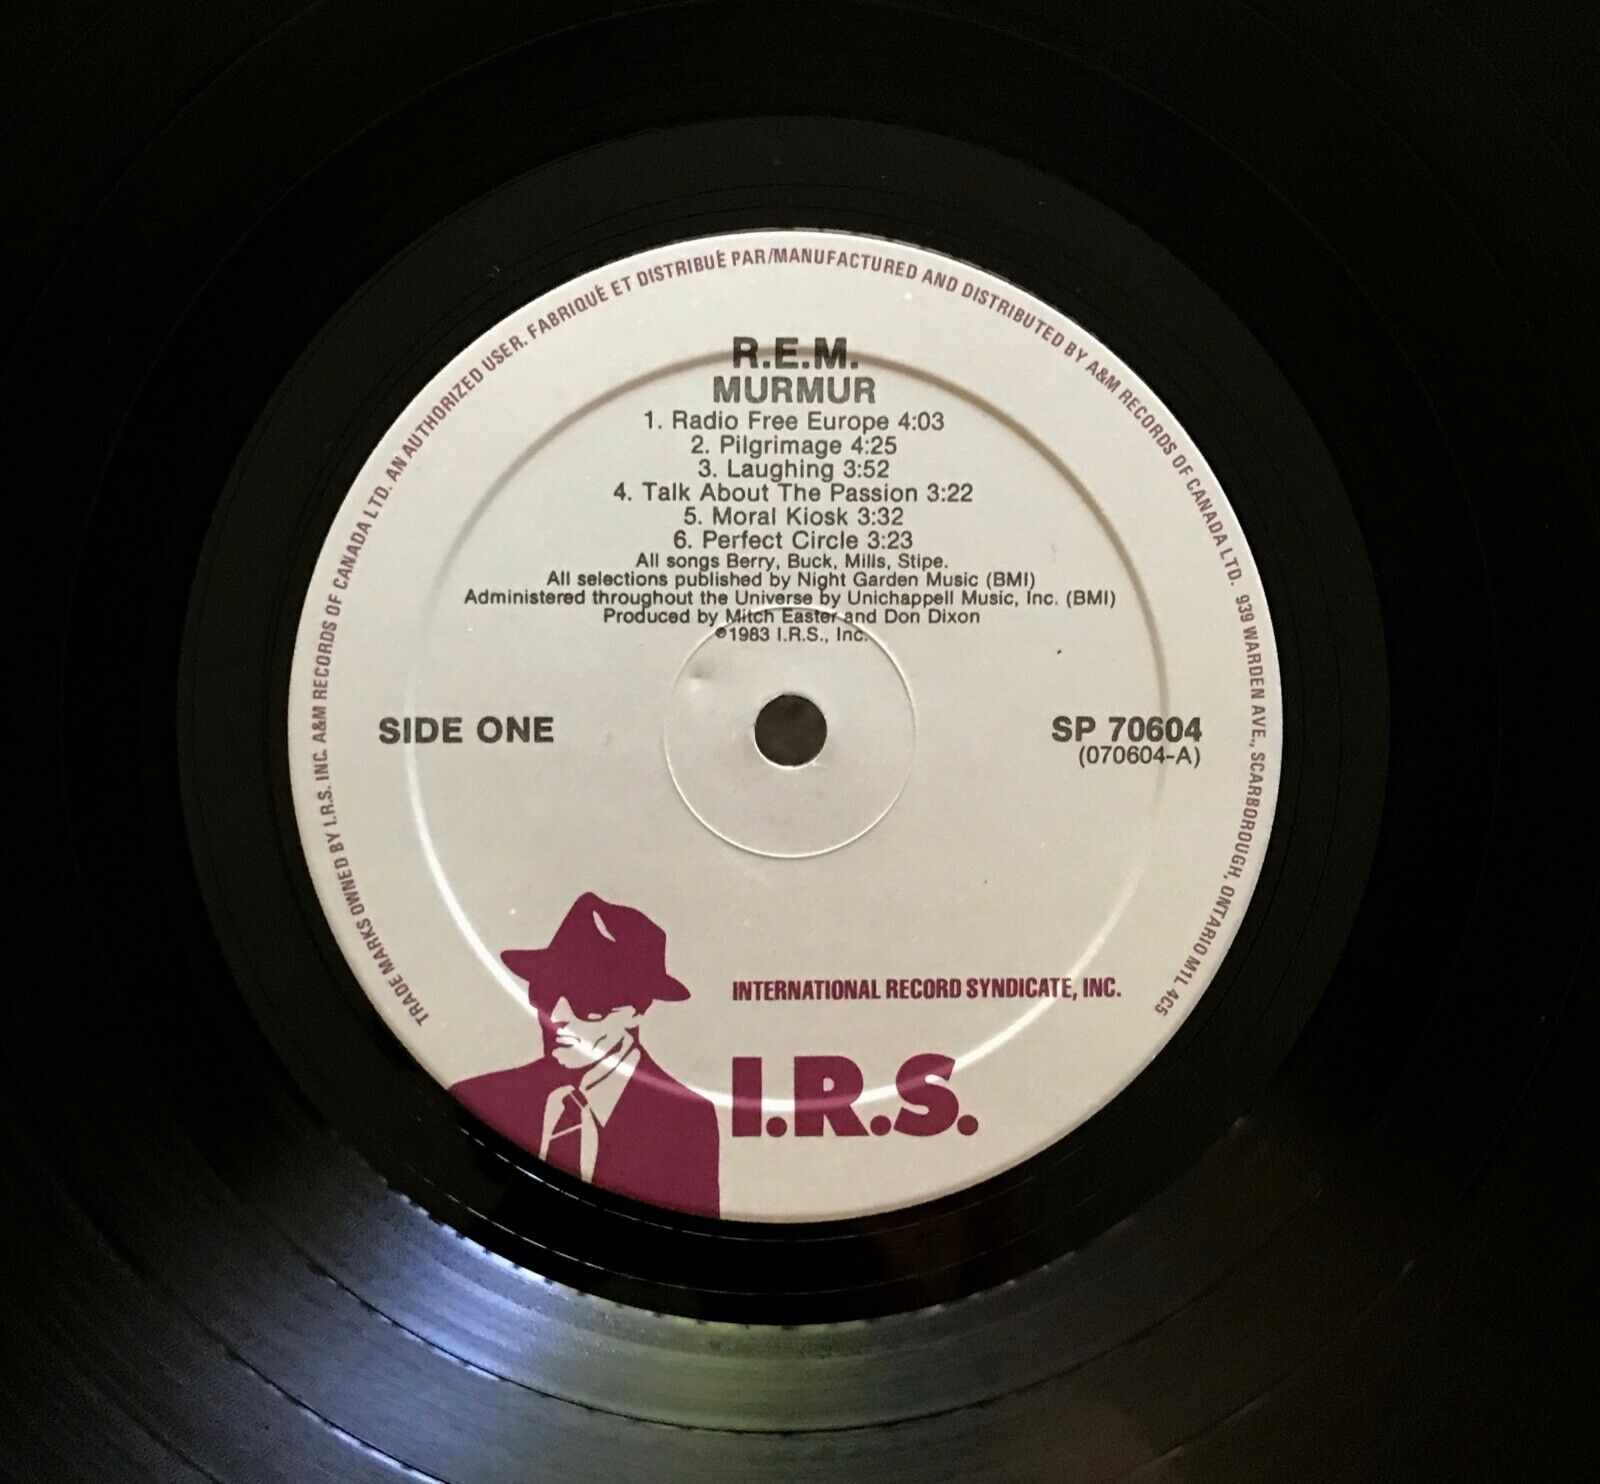 popsike.com - ORIGINAL Vtg 1983 R.E.M. Album MURMUR Record REM Lp 